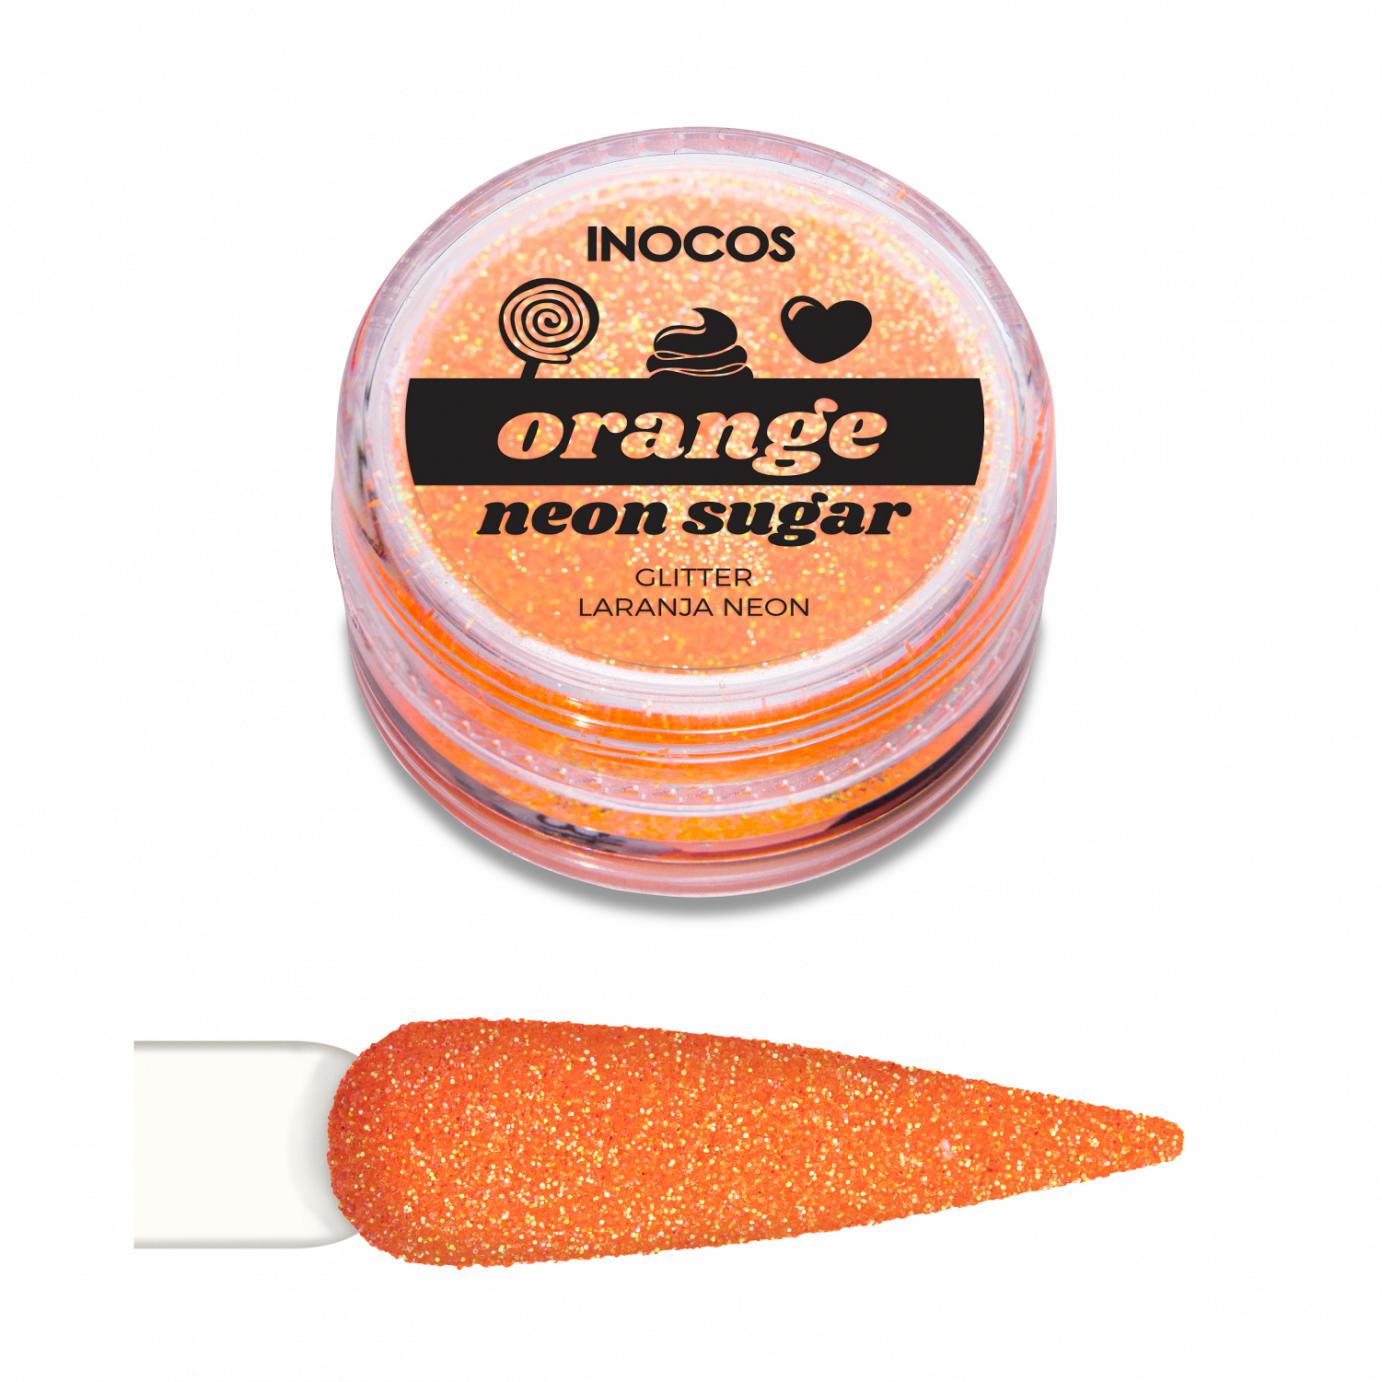 Inocos glitter para uñas polvo Neon Sugar naranja